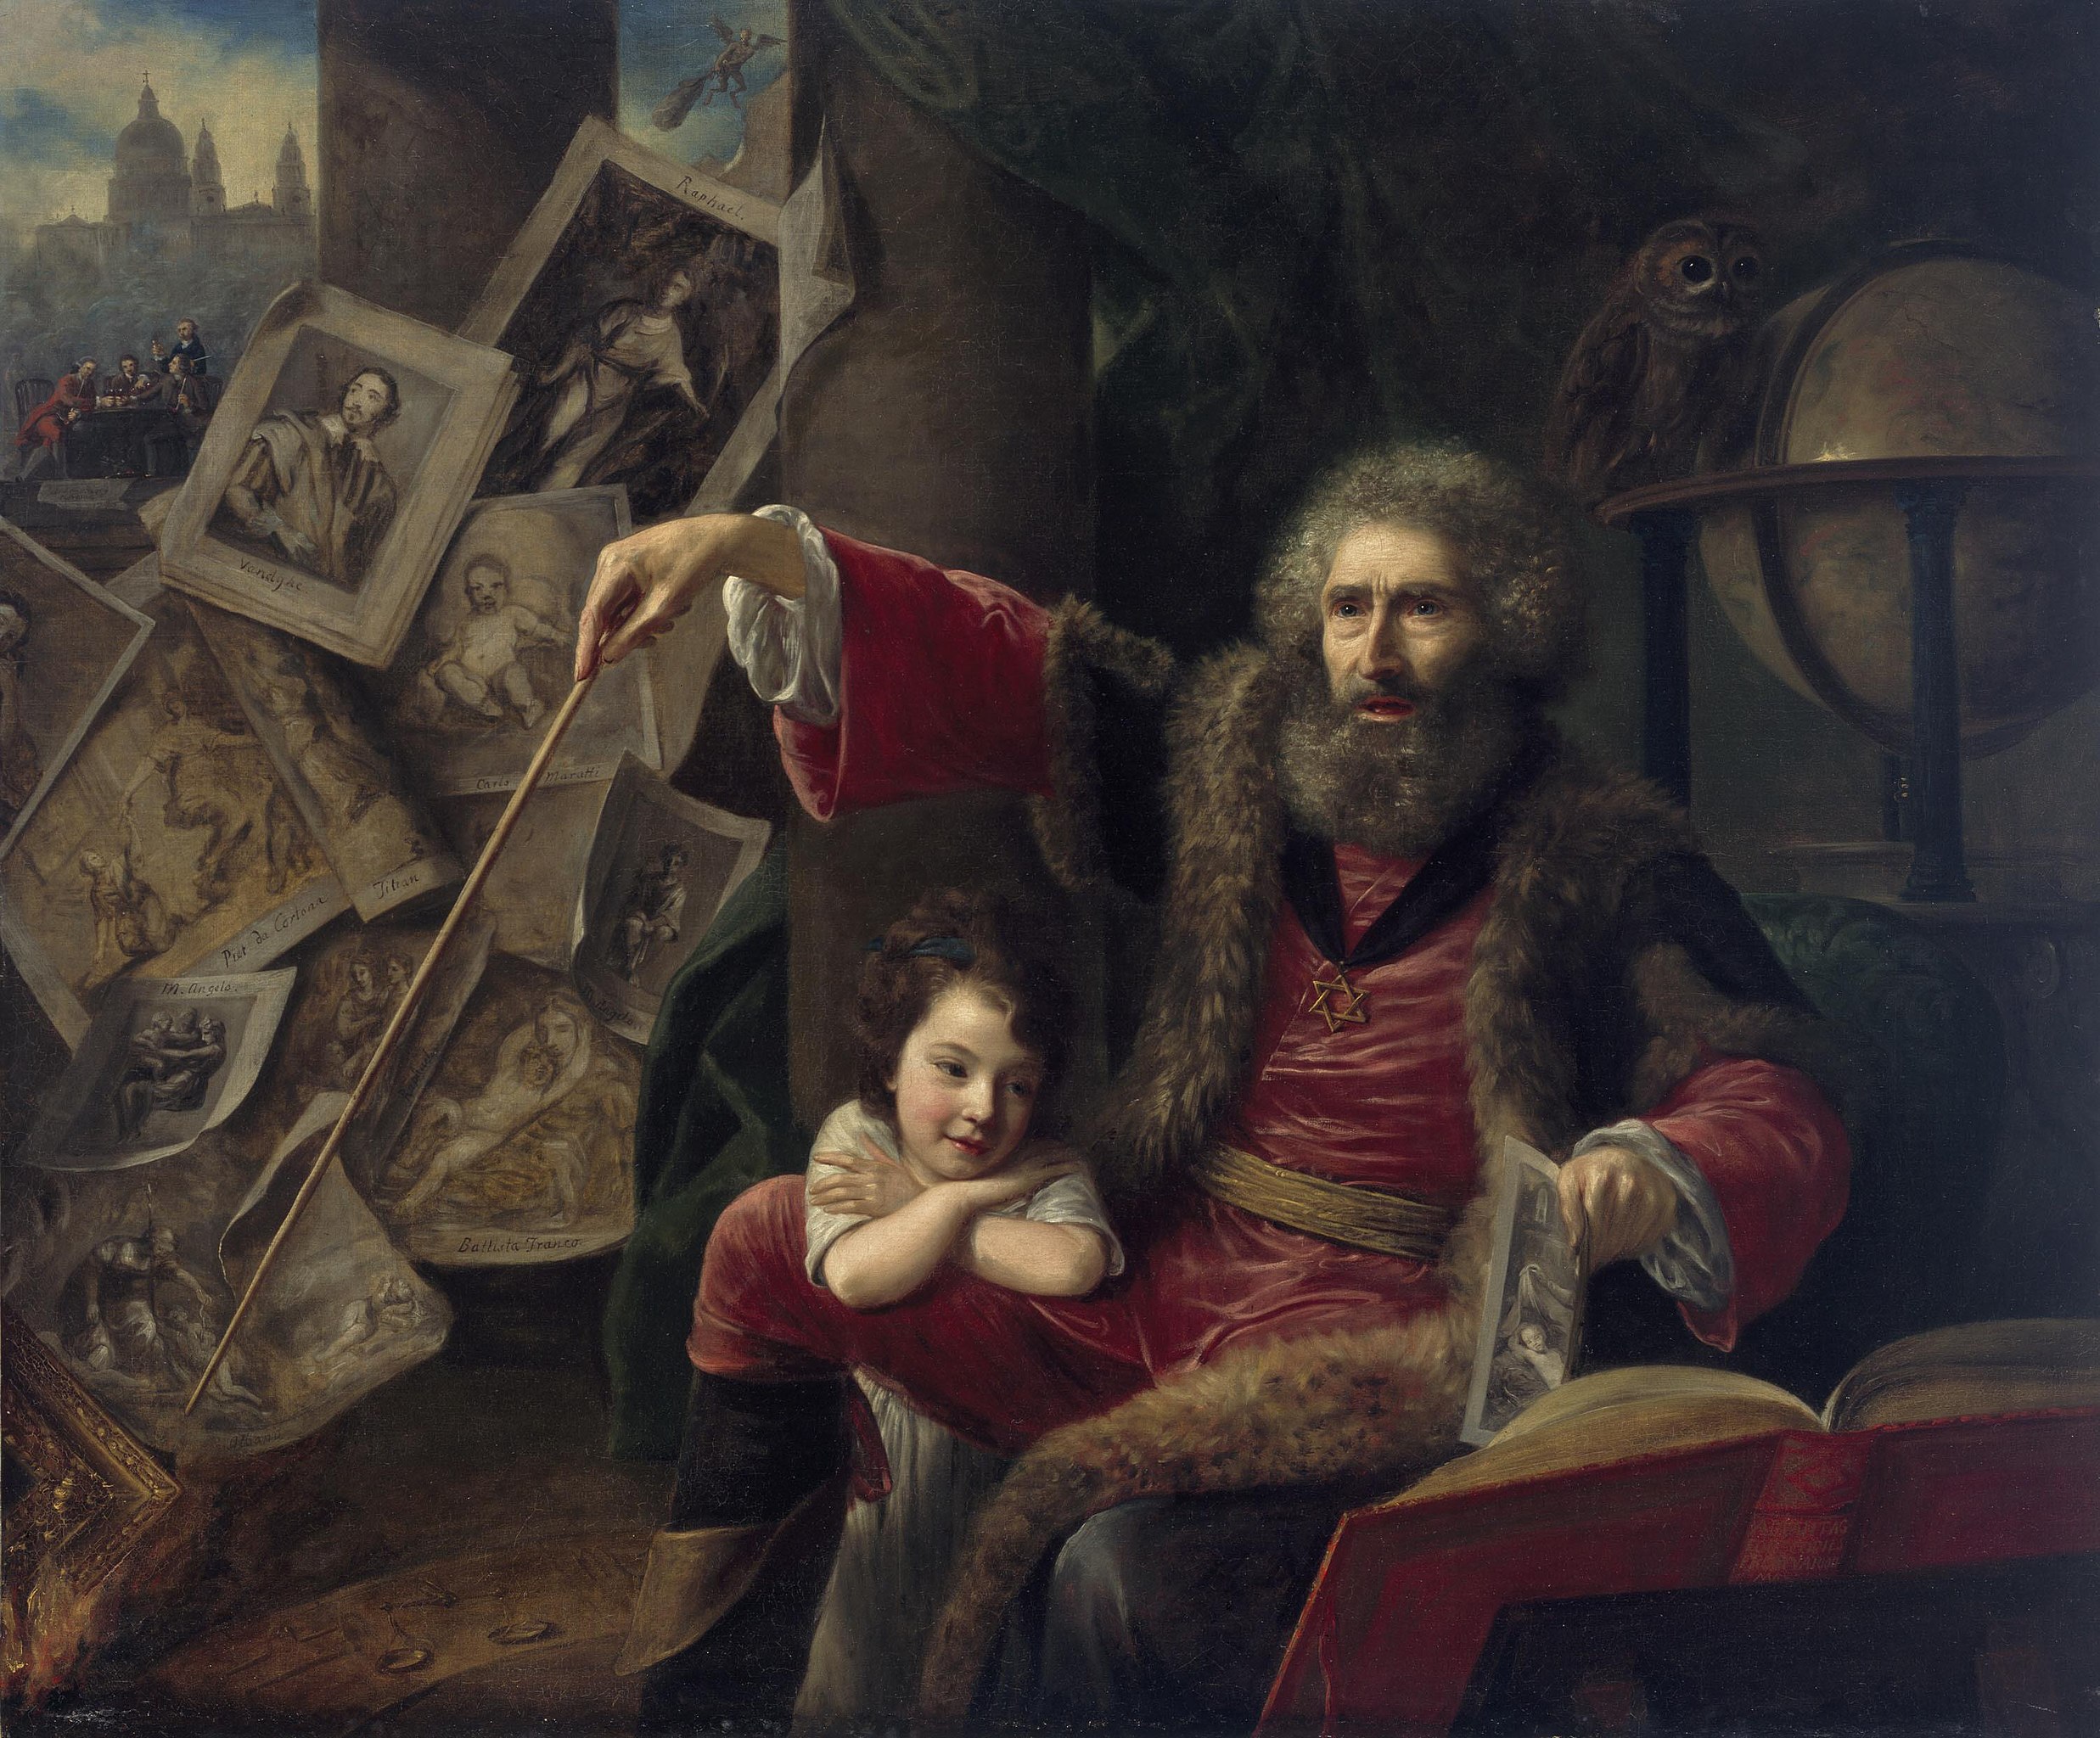 마술사(The Conjuror)(눈 속임의 예술이 담긴 그림 마술) by Nathaniel Hone the Elder - 1775 - 145 x 173 cm 